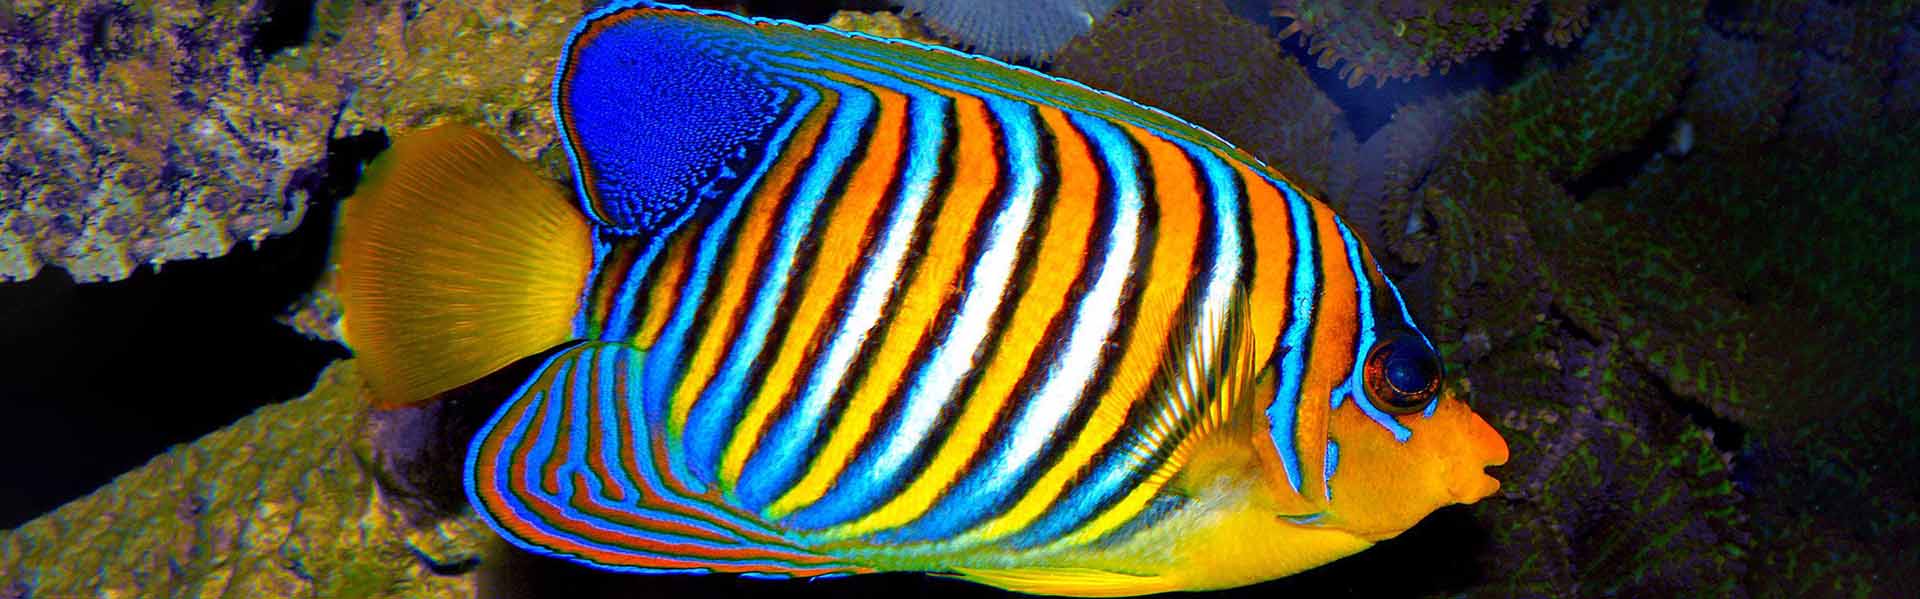 the-royal-angelfish